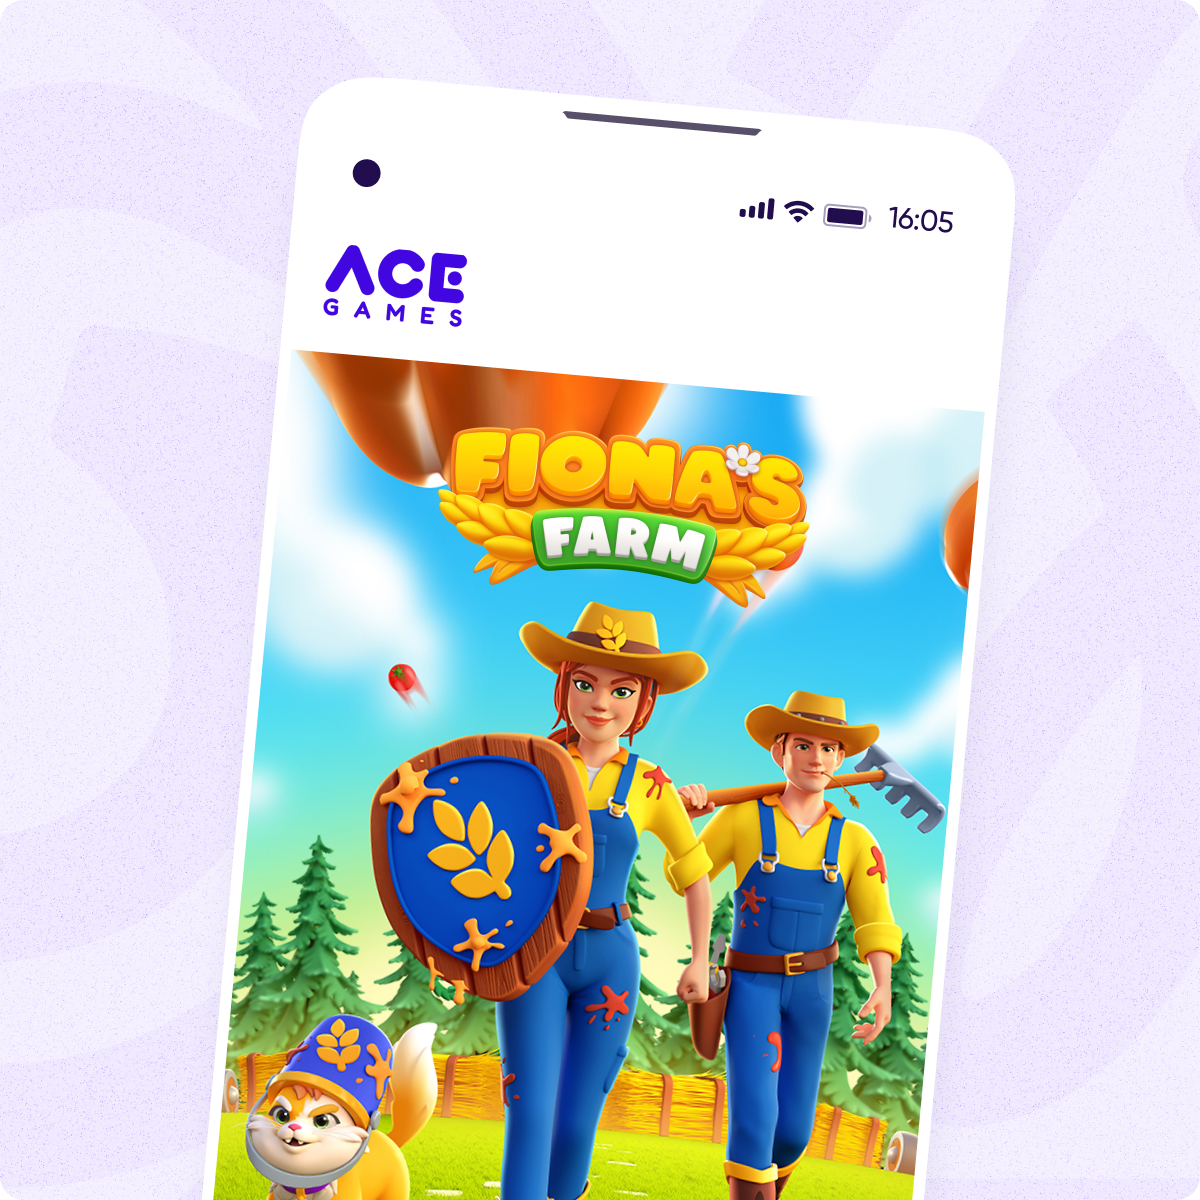 Ace Games - customer success story - OG image